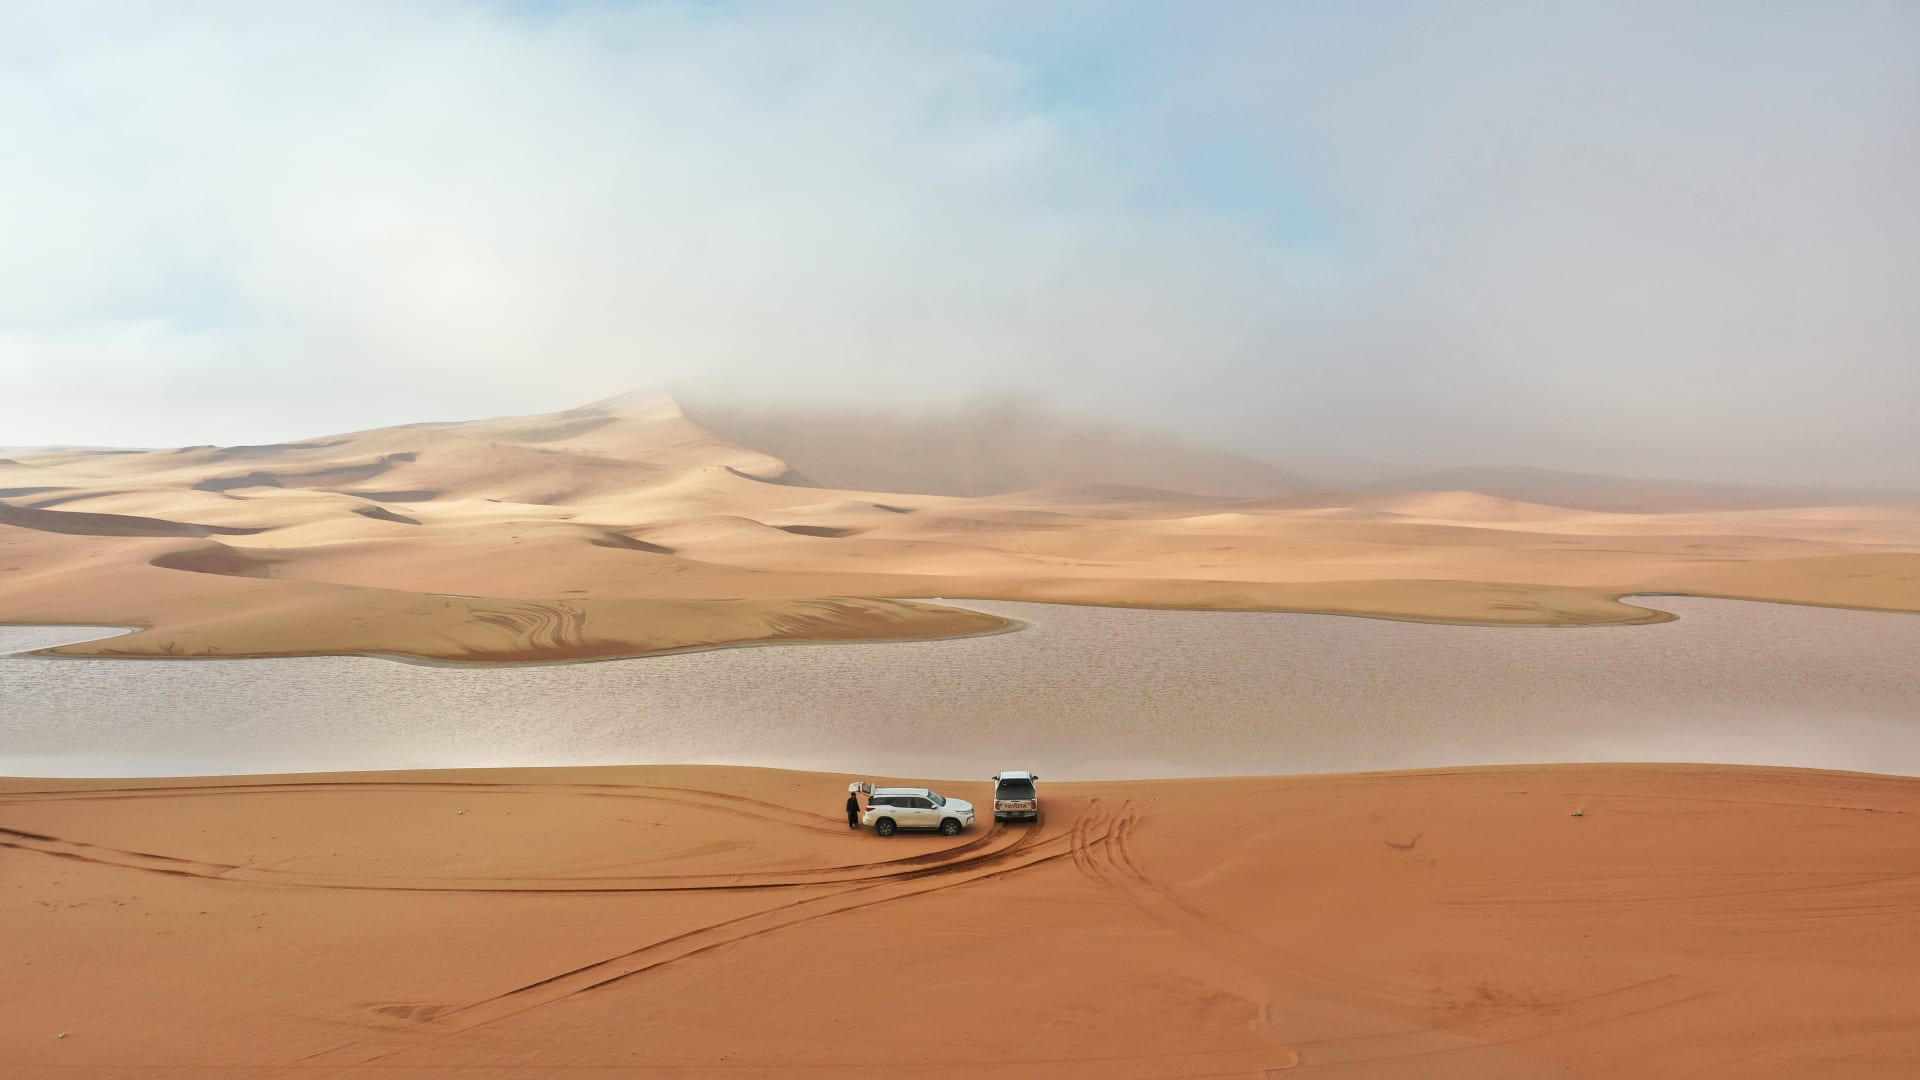 Nach heftigen Regenfällen in Saudi-Arabien … dokumentiert ein Fotograf eine magische Szene von Seen im Herzen der Wüste 